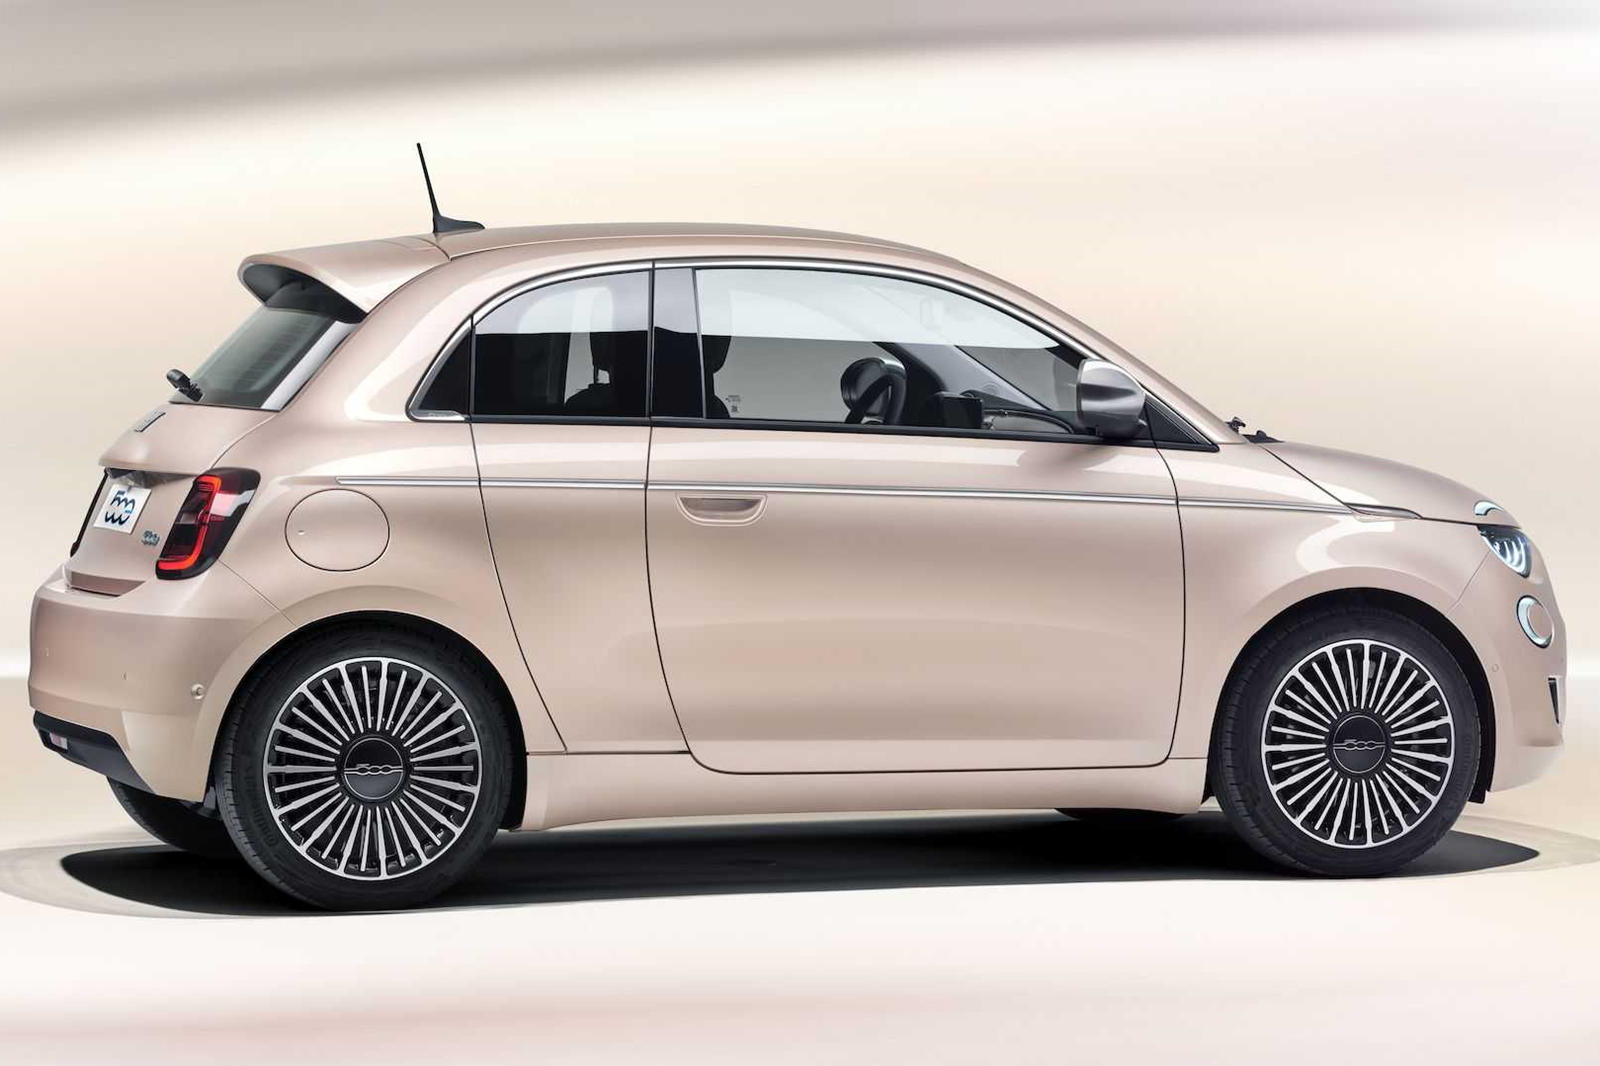 Новый двухдверный 2021 Fiat 500 был возрожден исключительно с полностью электрической трансмиссией с максимальной мощностью 118 лошадиных сил и дальностью хода до 320 км/ч на одной зарядке. Это более чем идеально для езды по городу в Европе. А еще ес